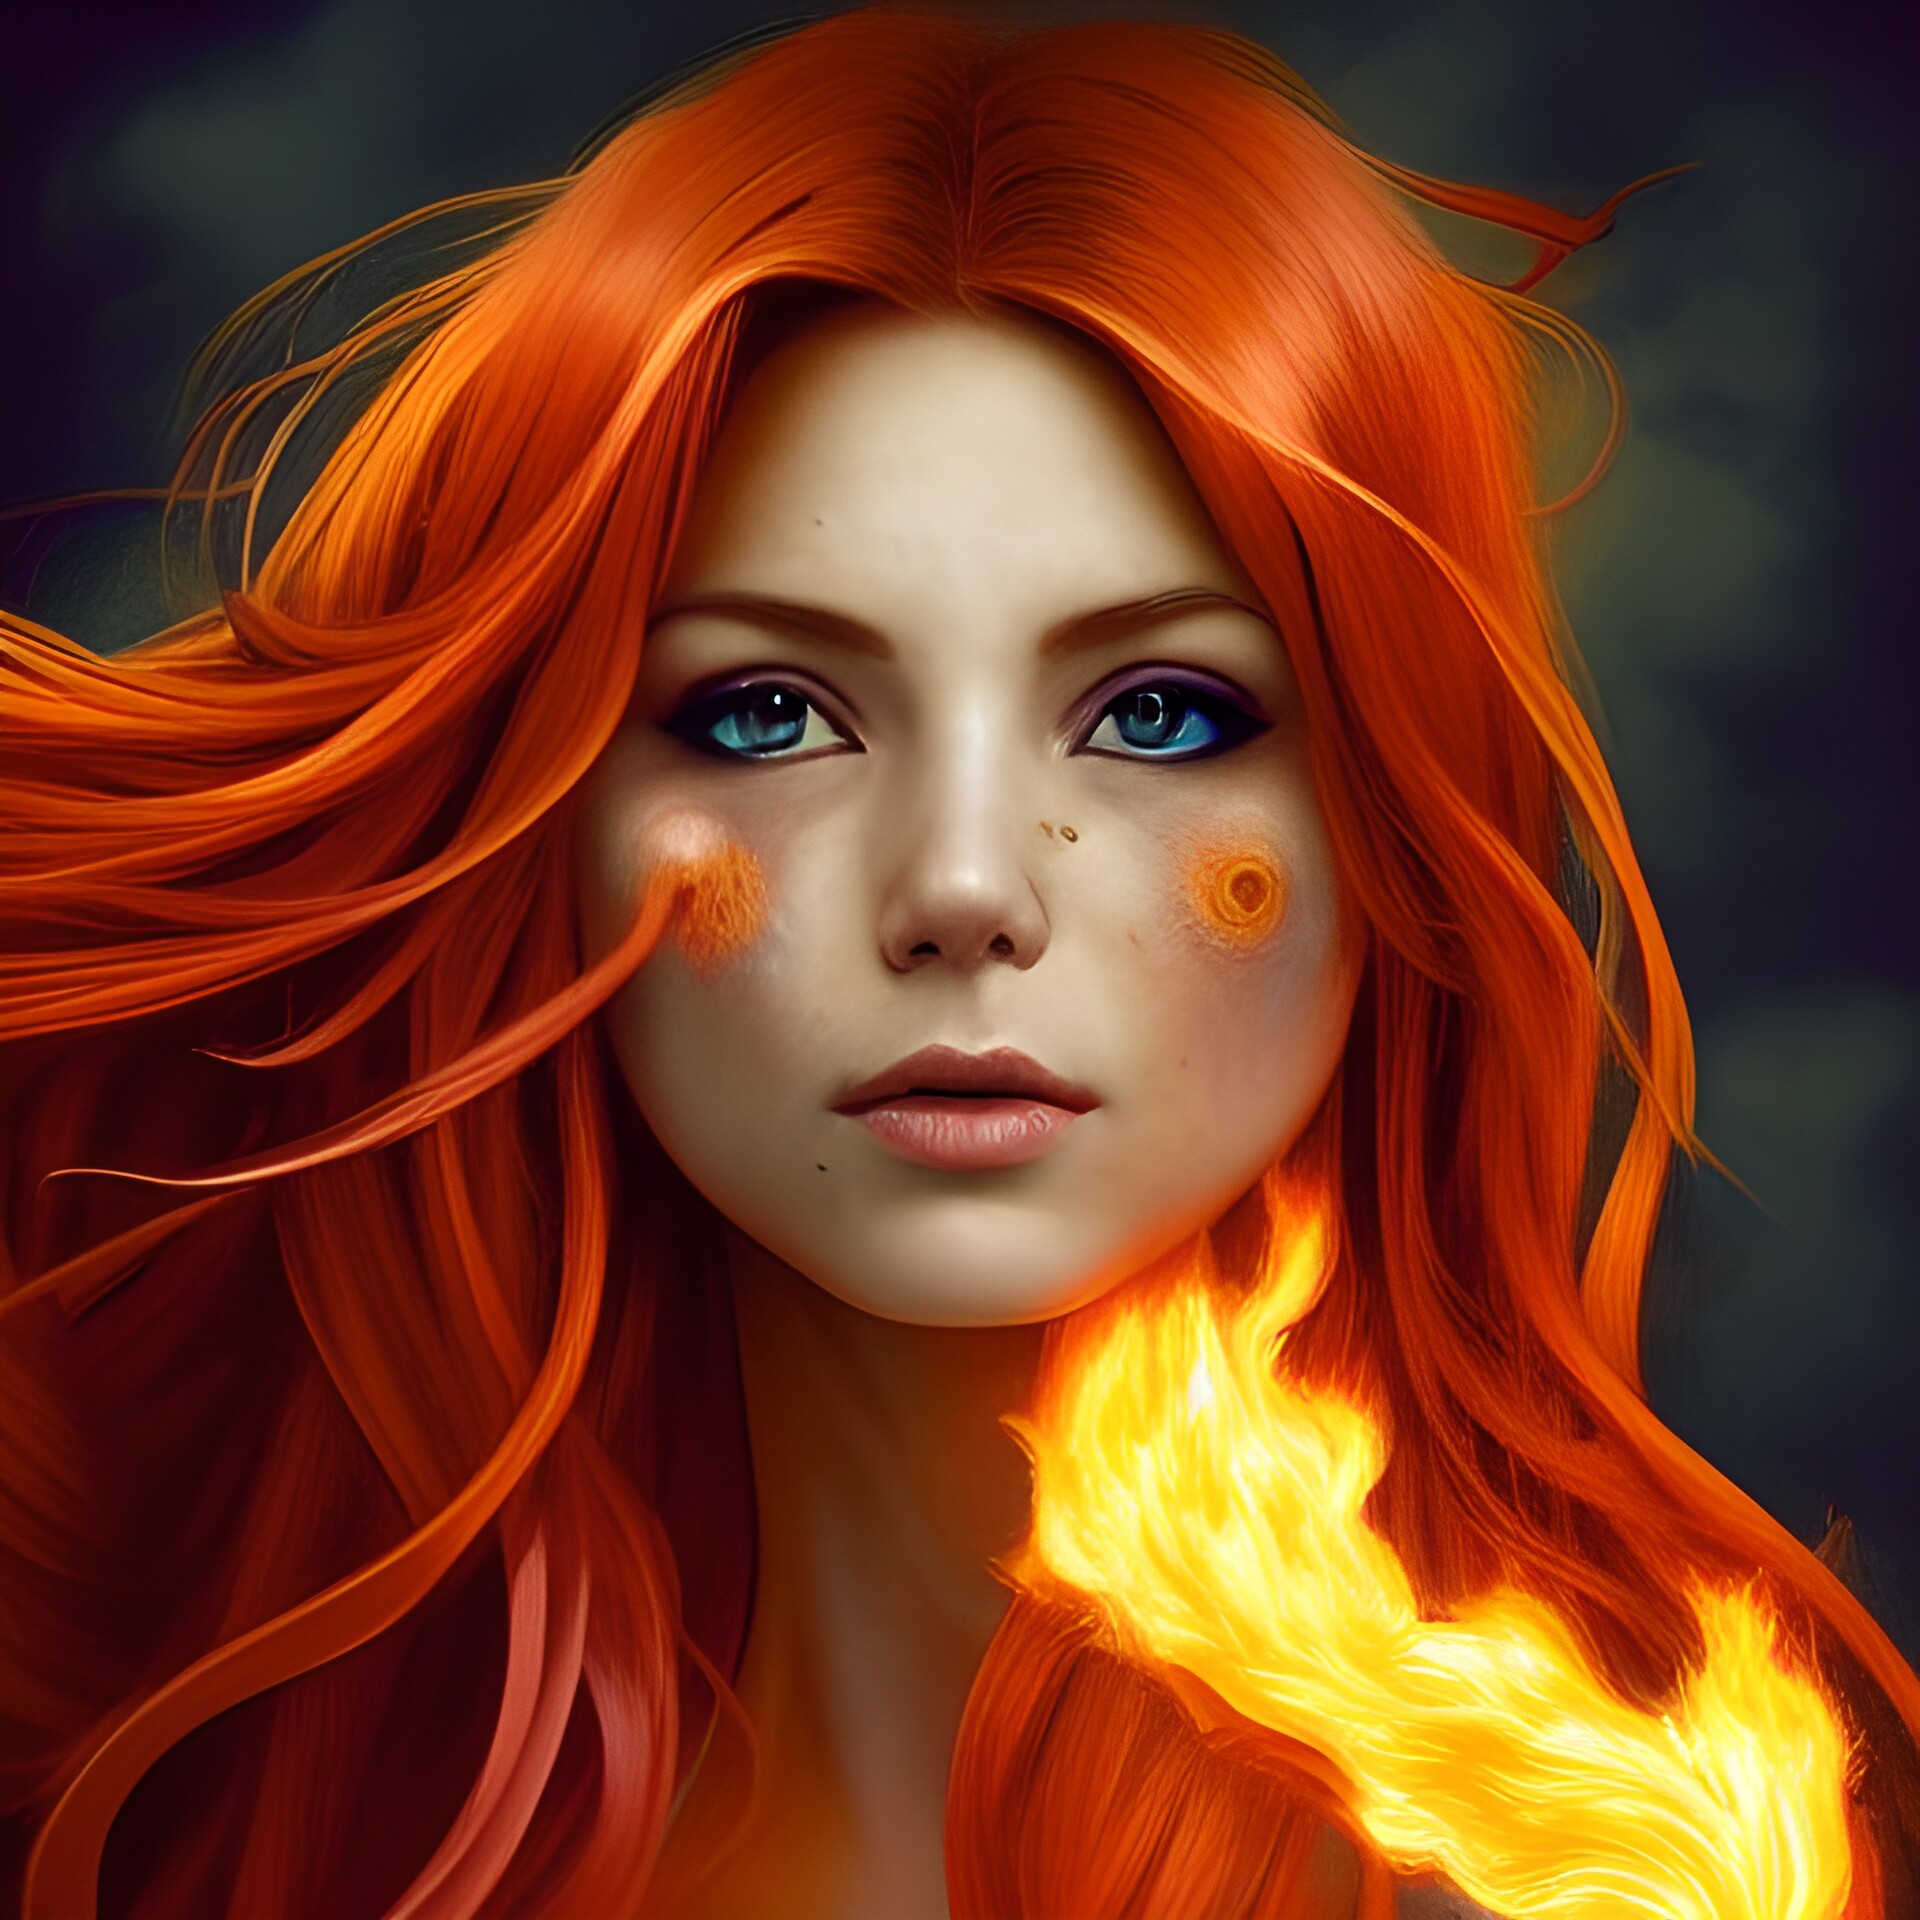 ArtStation - Orange hair fire goddess